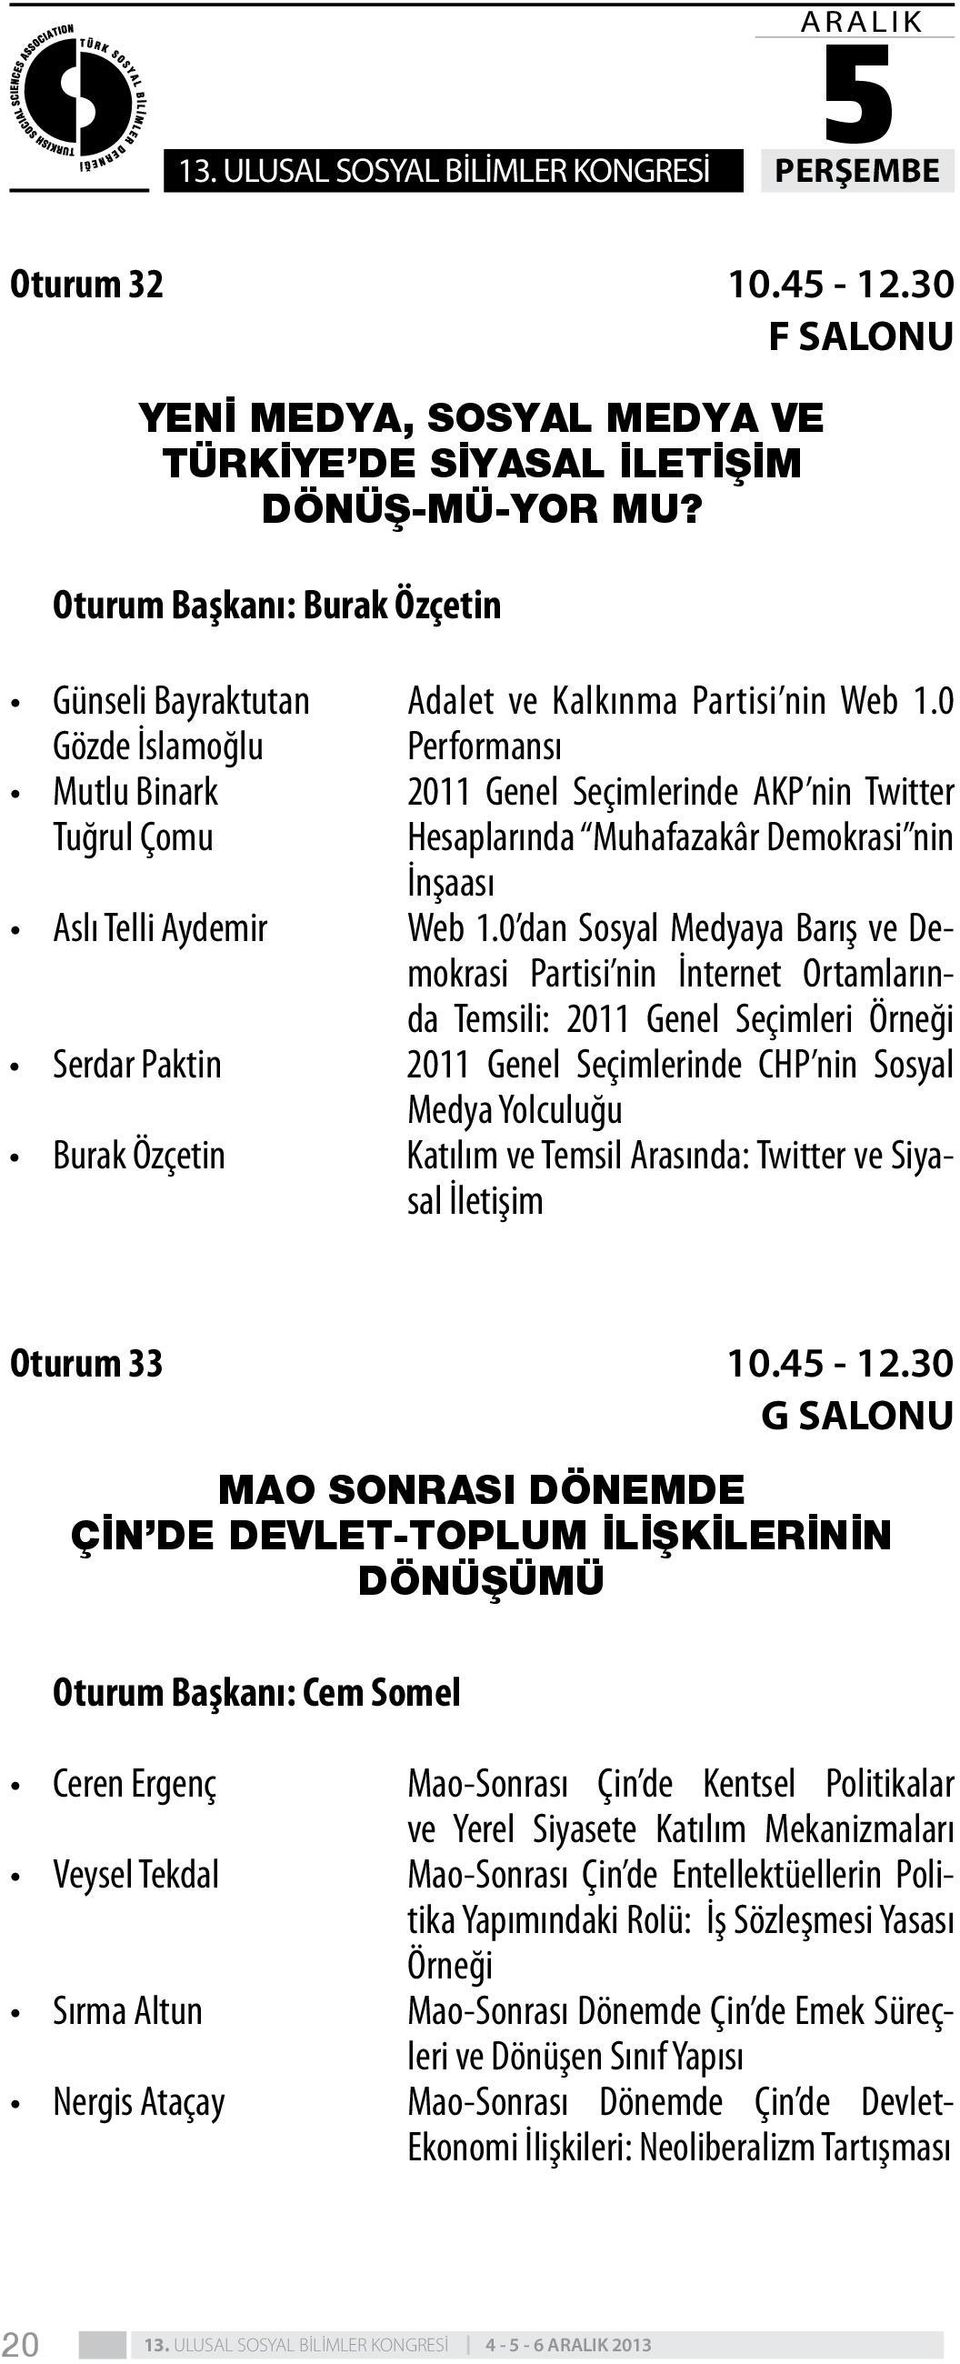 0 Gözde İslamoğlu Performansı Mutlu Binark 2011 Genel Seçimlerinde AKP nin Twitter Tuğrul Çomu Hesaplarında Muhafazakâr Demokrasi nin İnşaası Aslı Telli Aydemir Web 1.